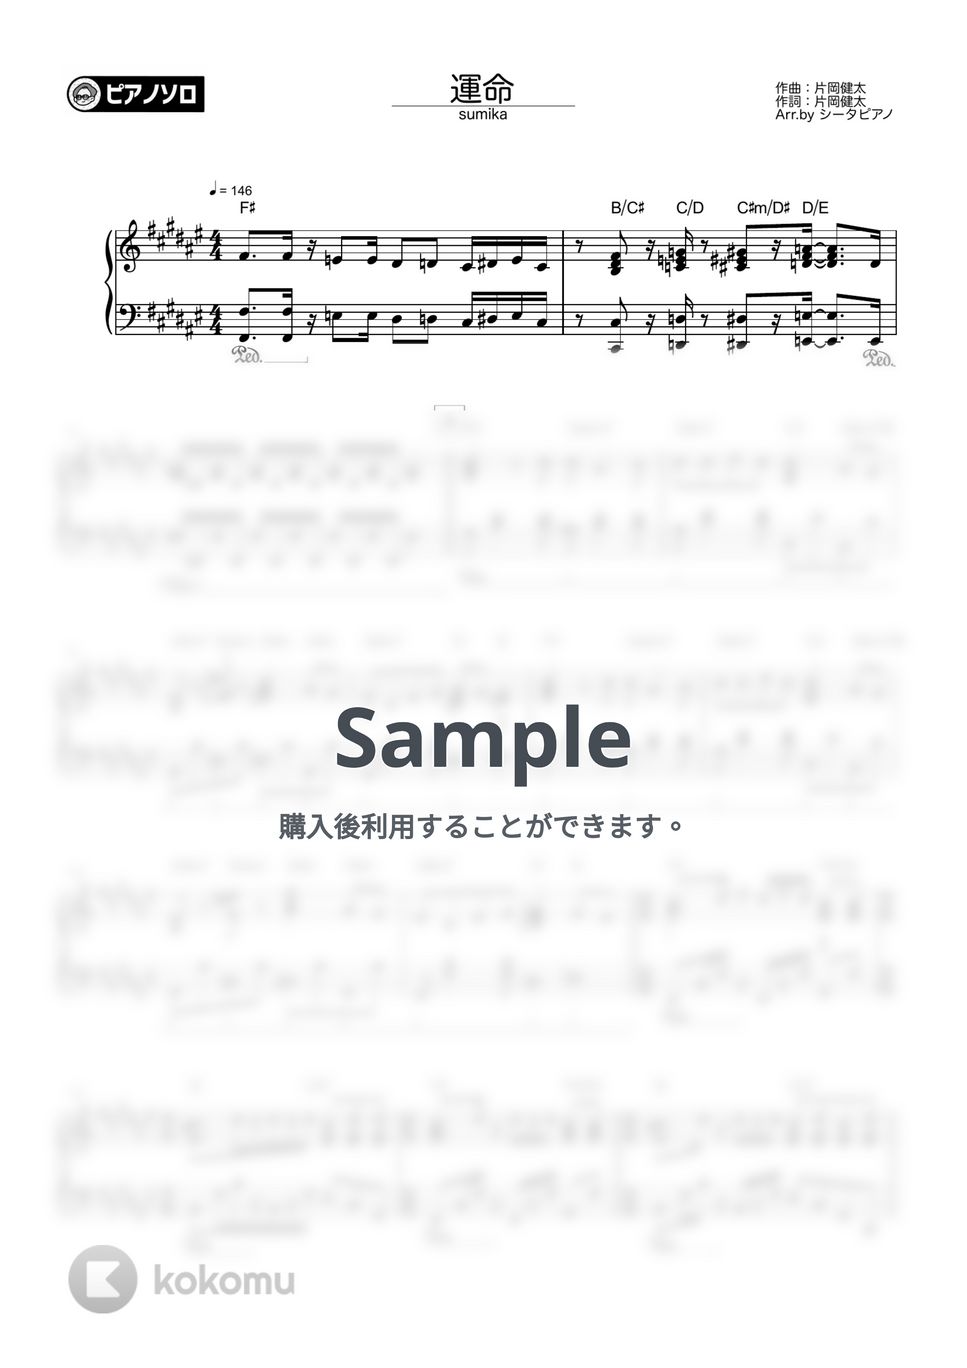 sumika - 運命 by シータピアノ